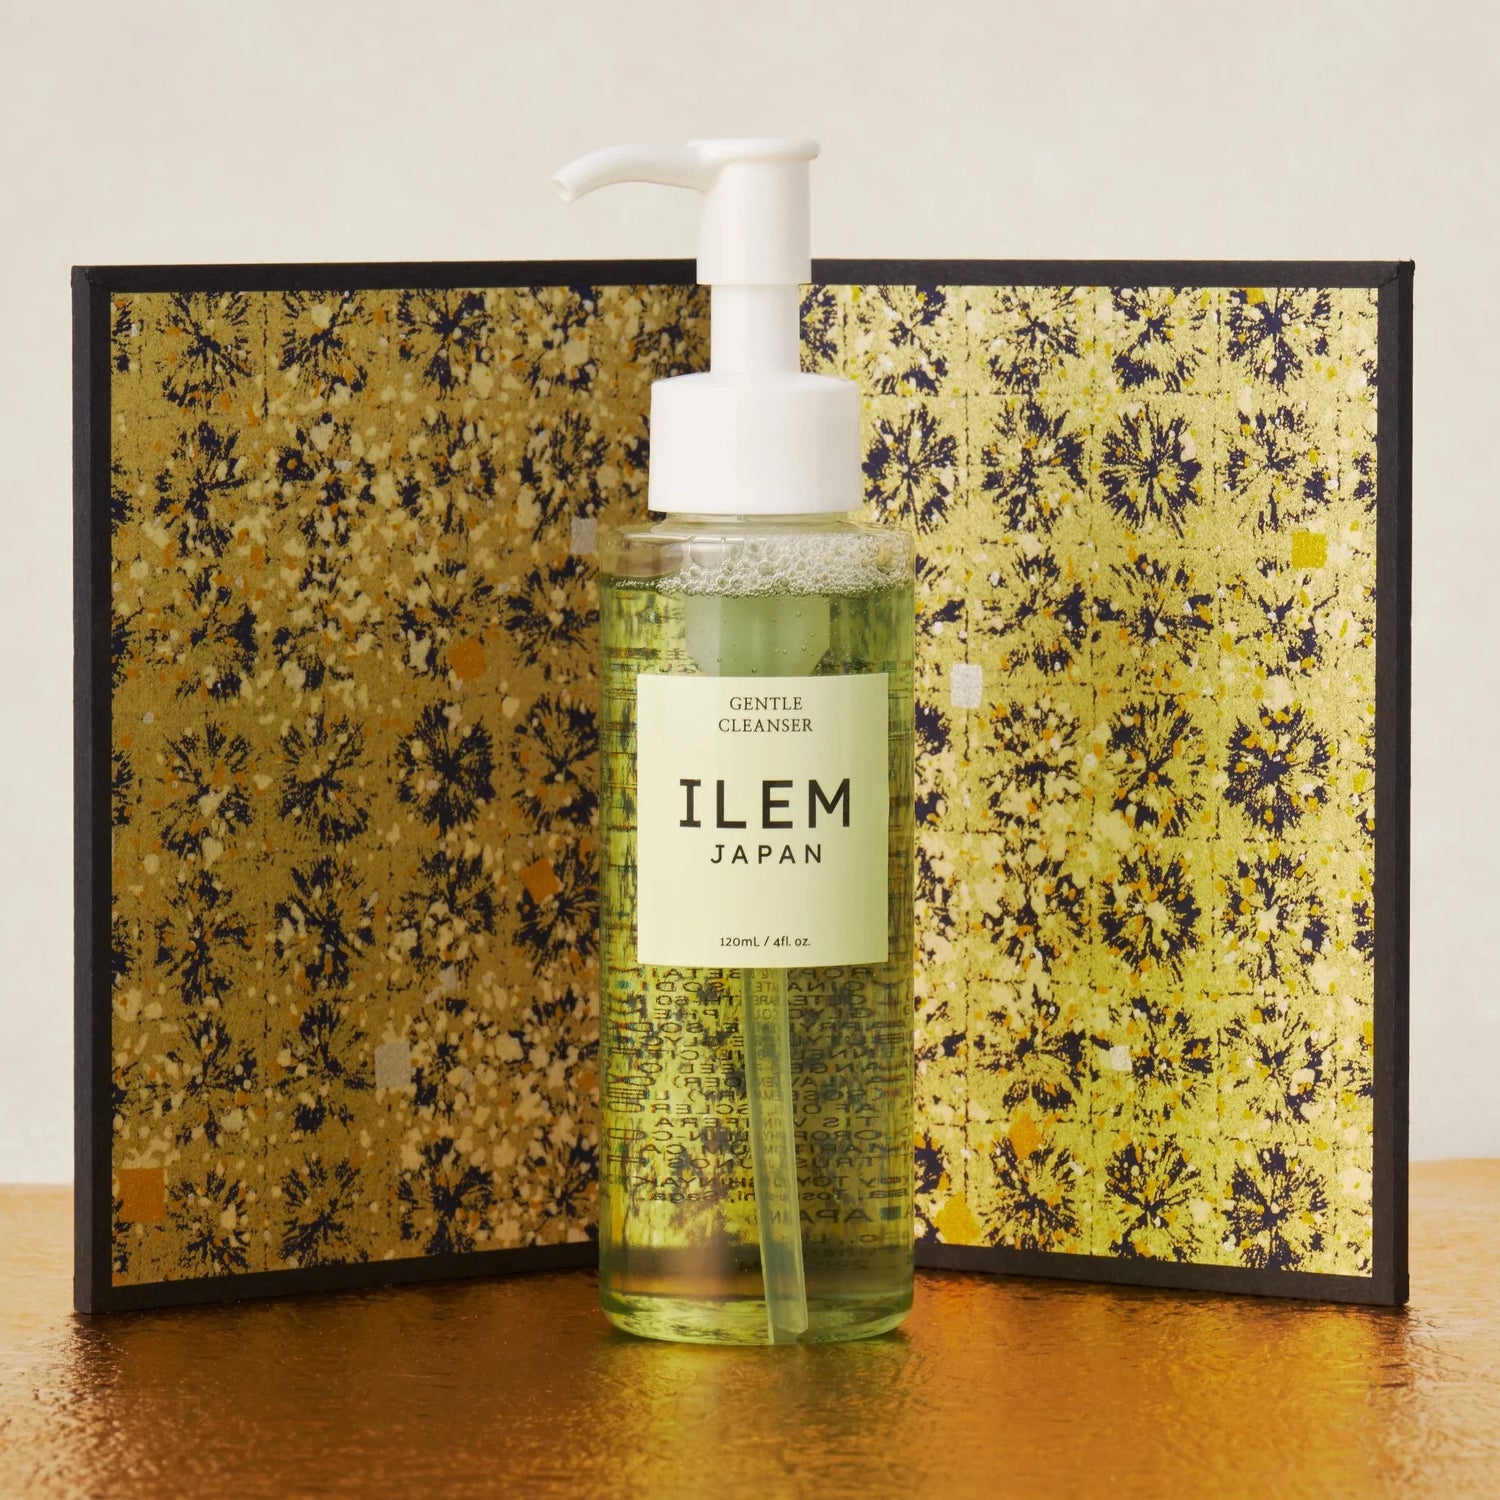 gentle skin cleanser from ILEM JAPAN